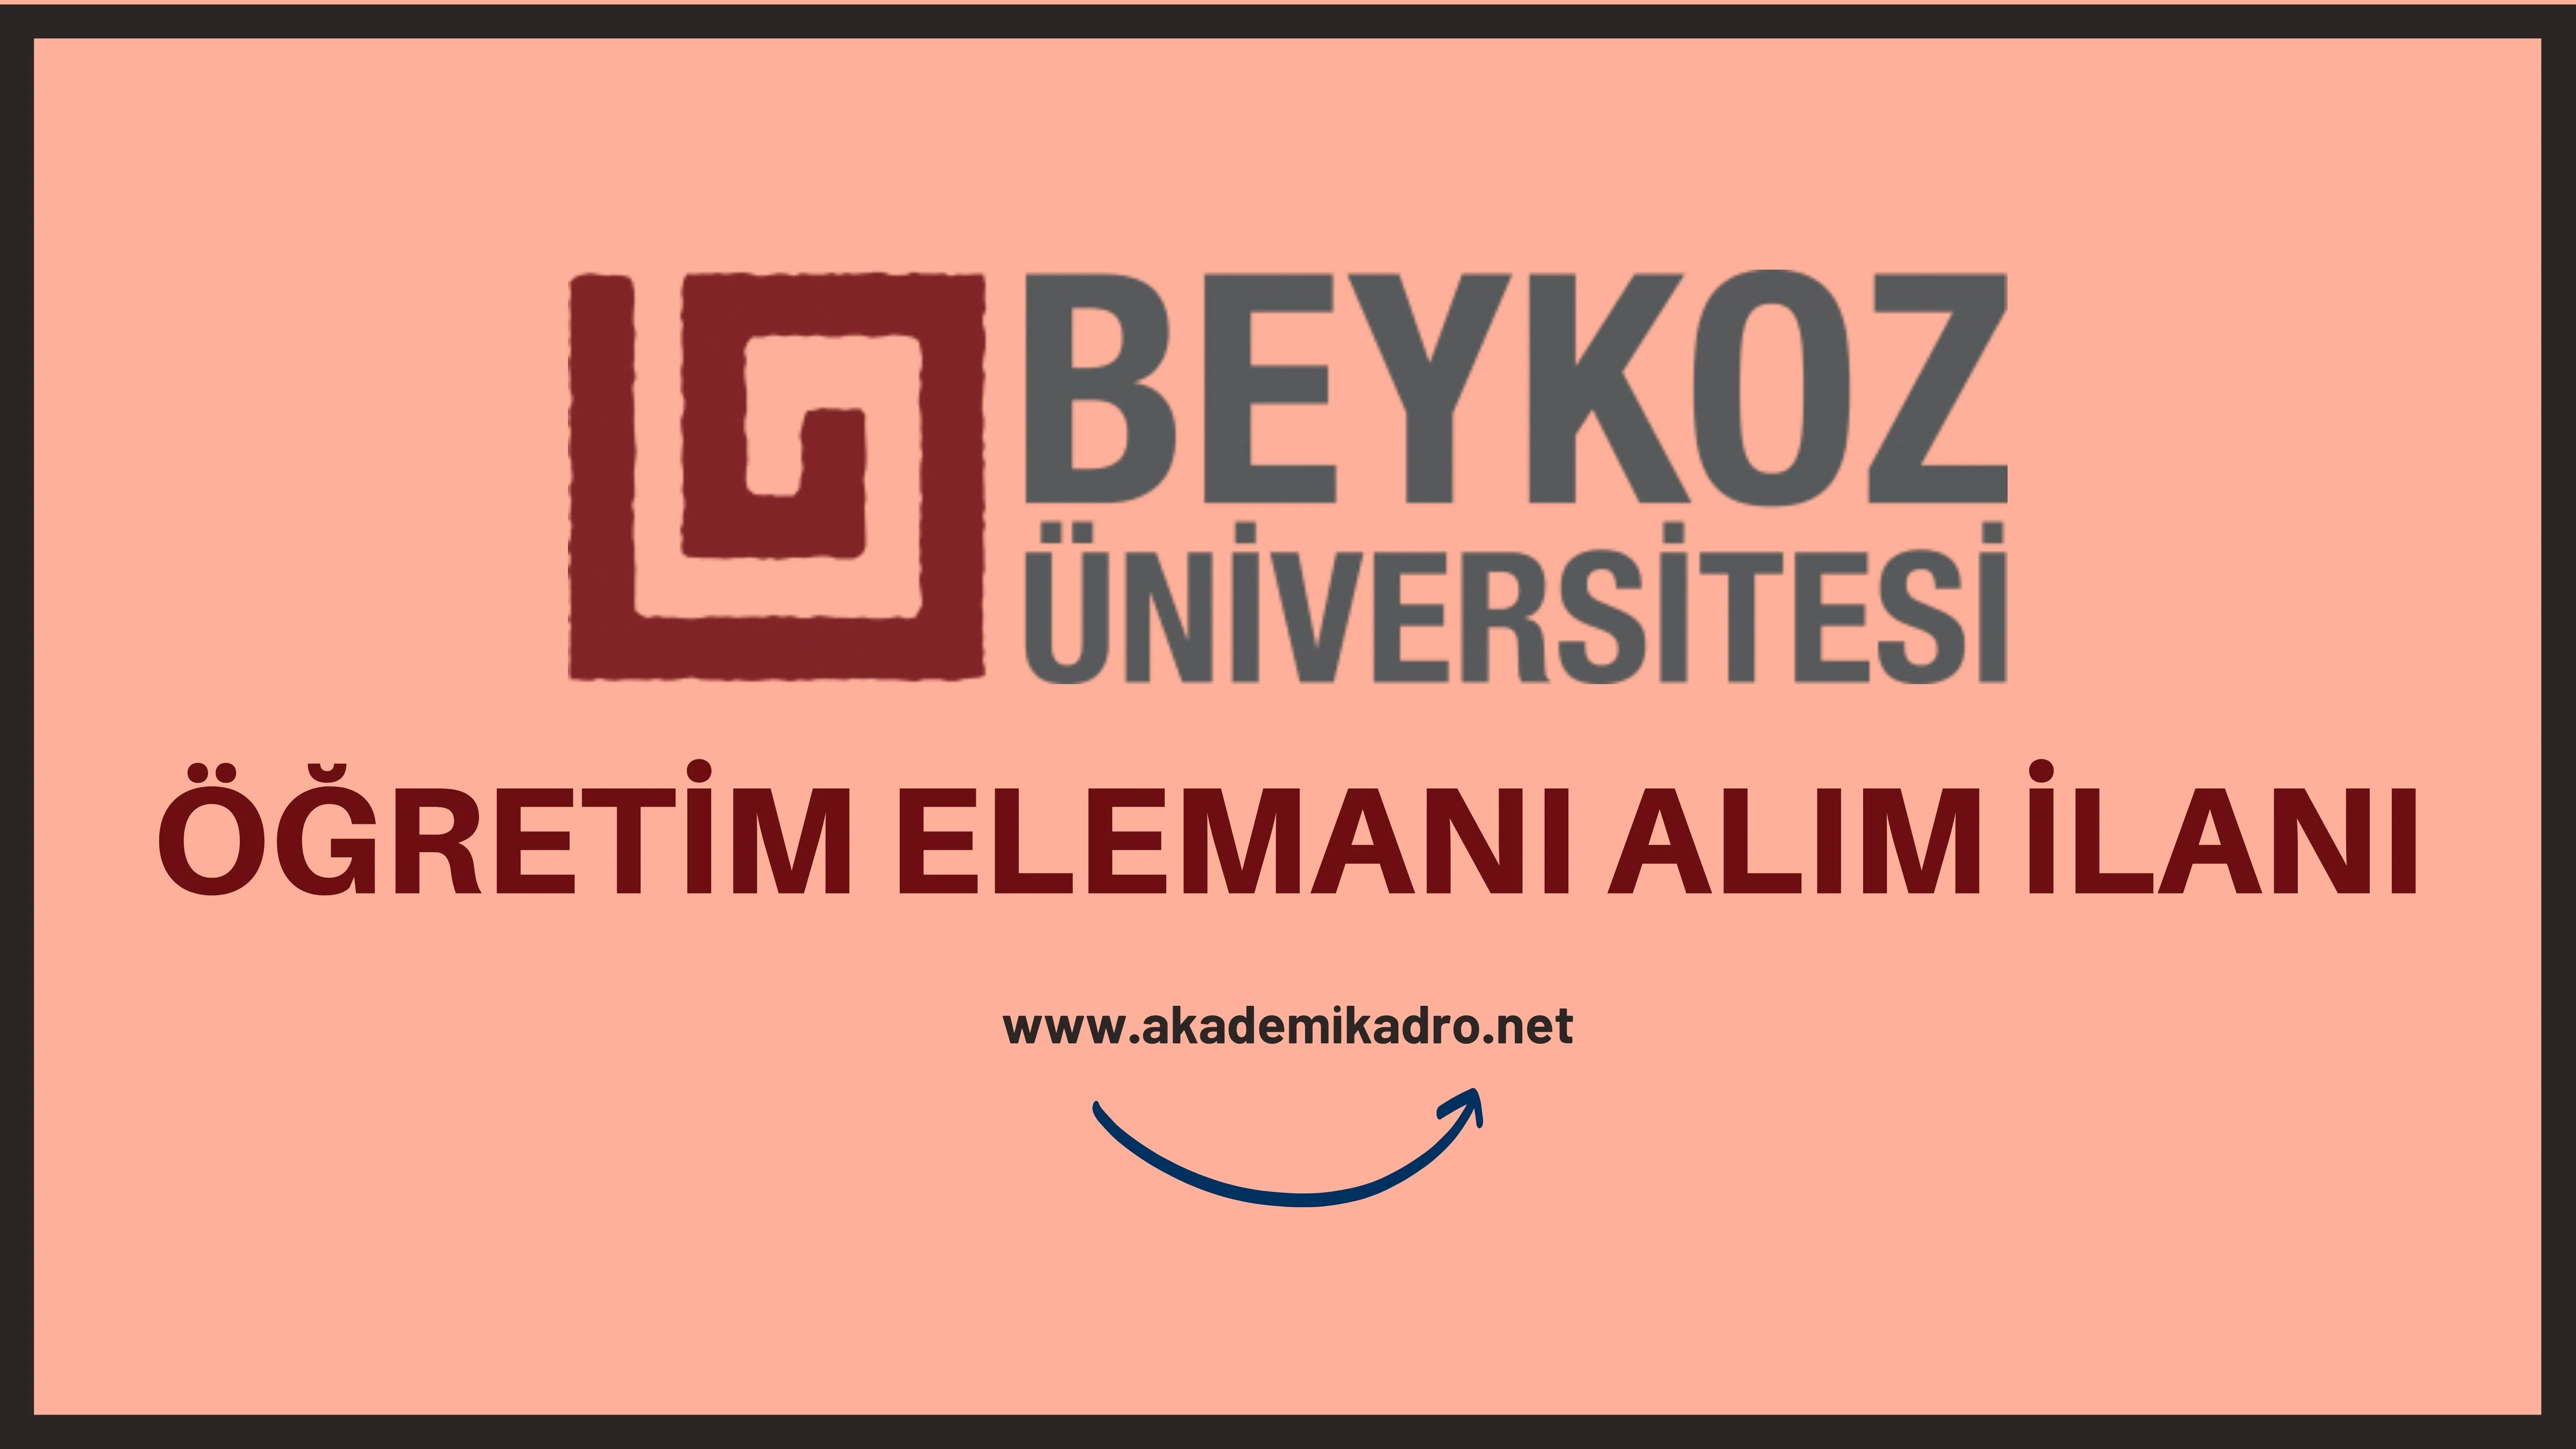 Beykoz Üniversitesi 10 Öğretim görevlisi, 6 Araştırma görevlisi ve 13 Öğretim üyesi alacak.